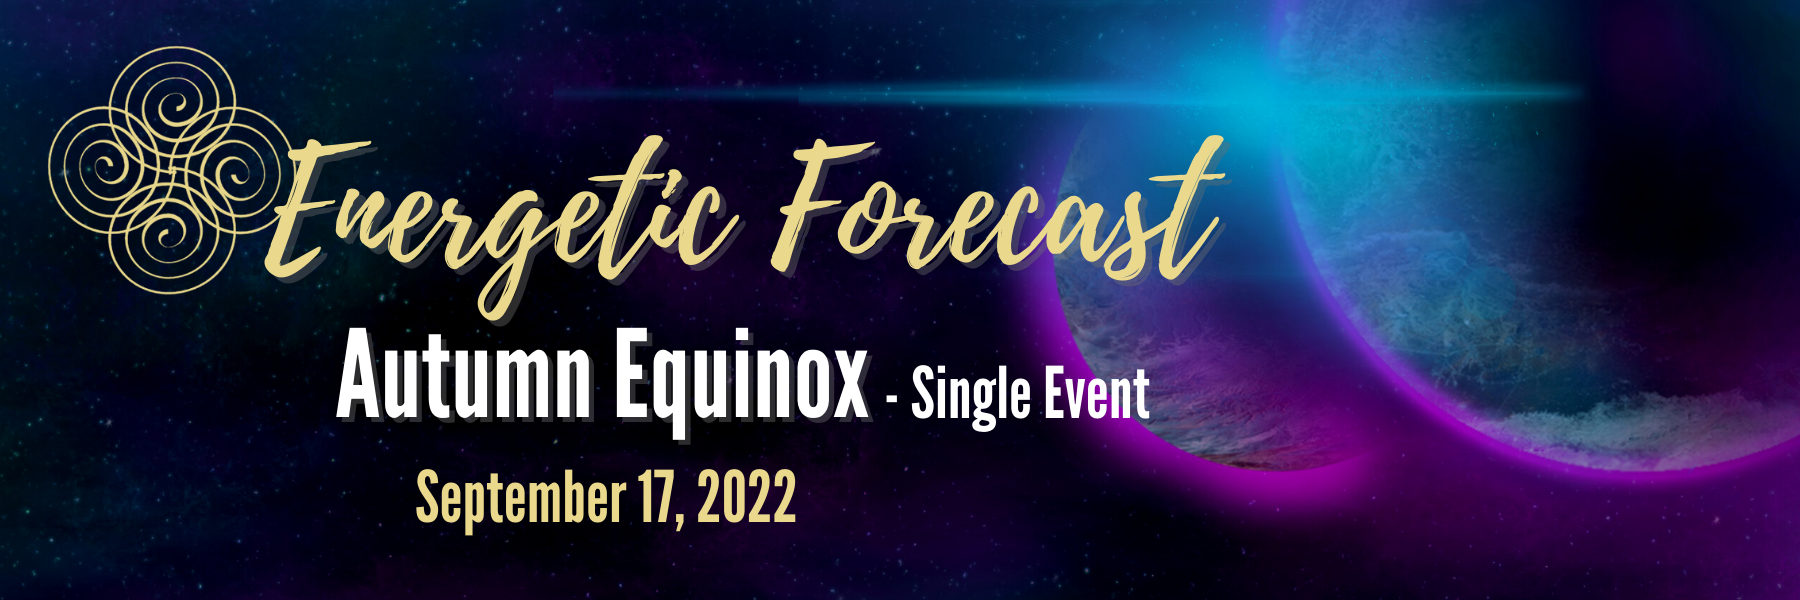 Energetic Forecast - Autumn Equinox 2022 - Single Event